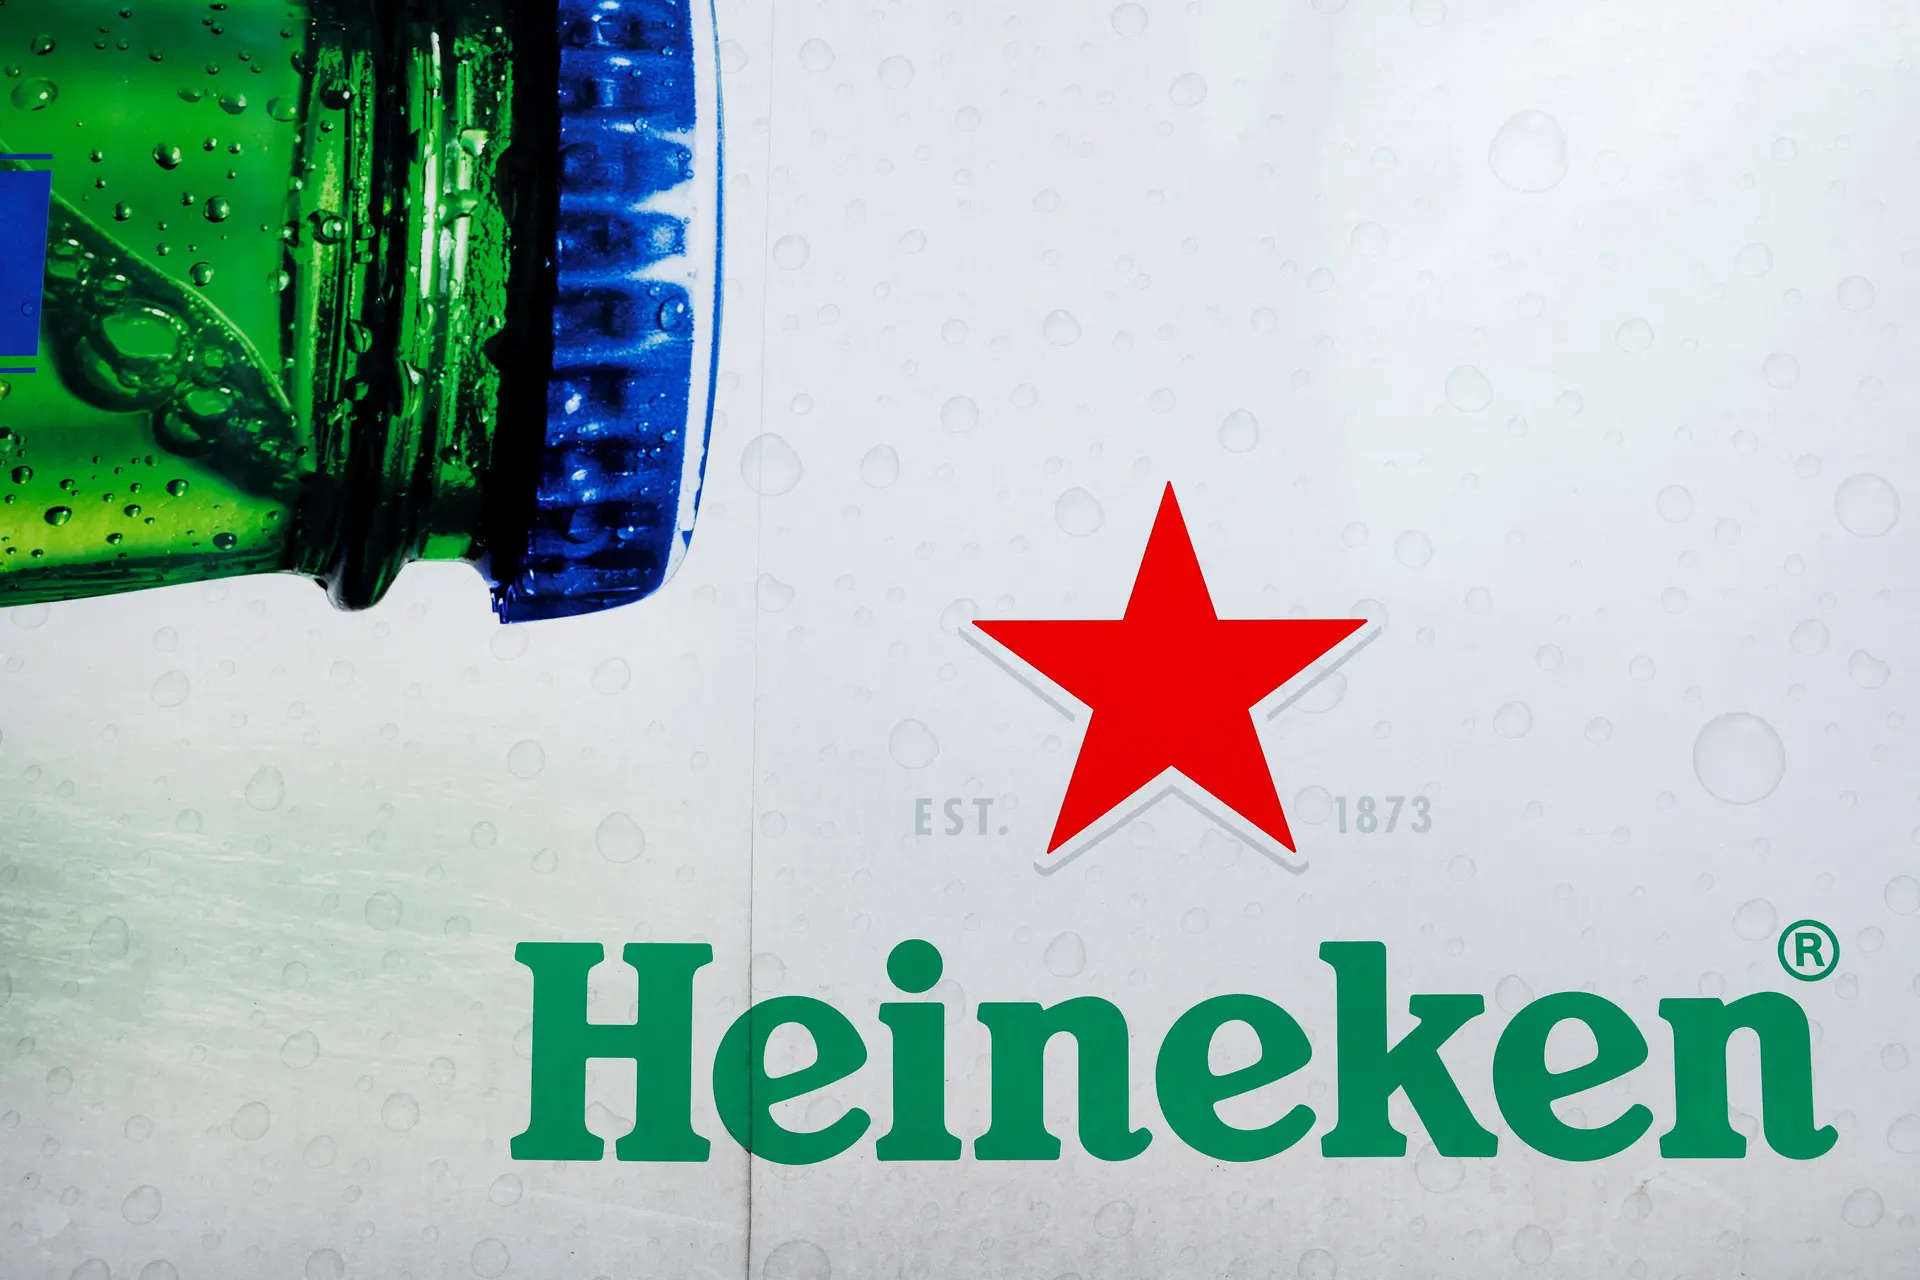 Heineken raises guidance despite first-half miss and impairment 